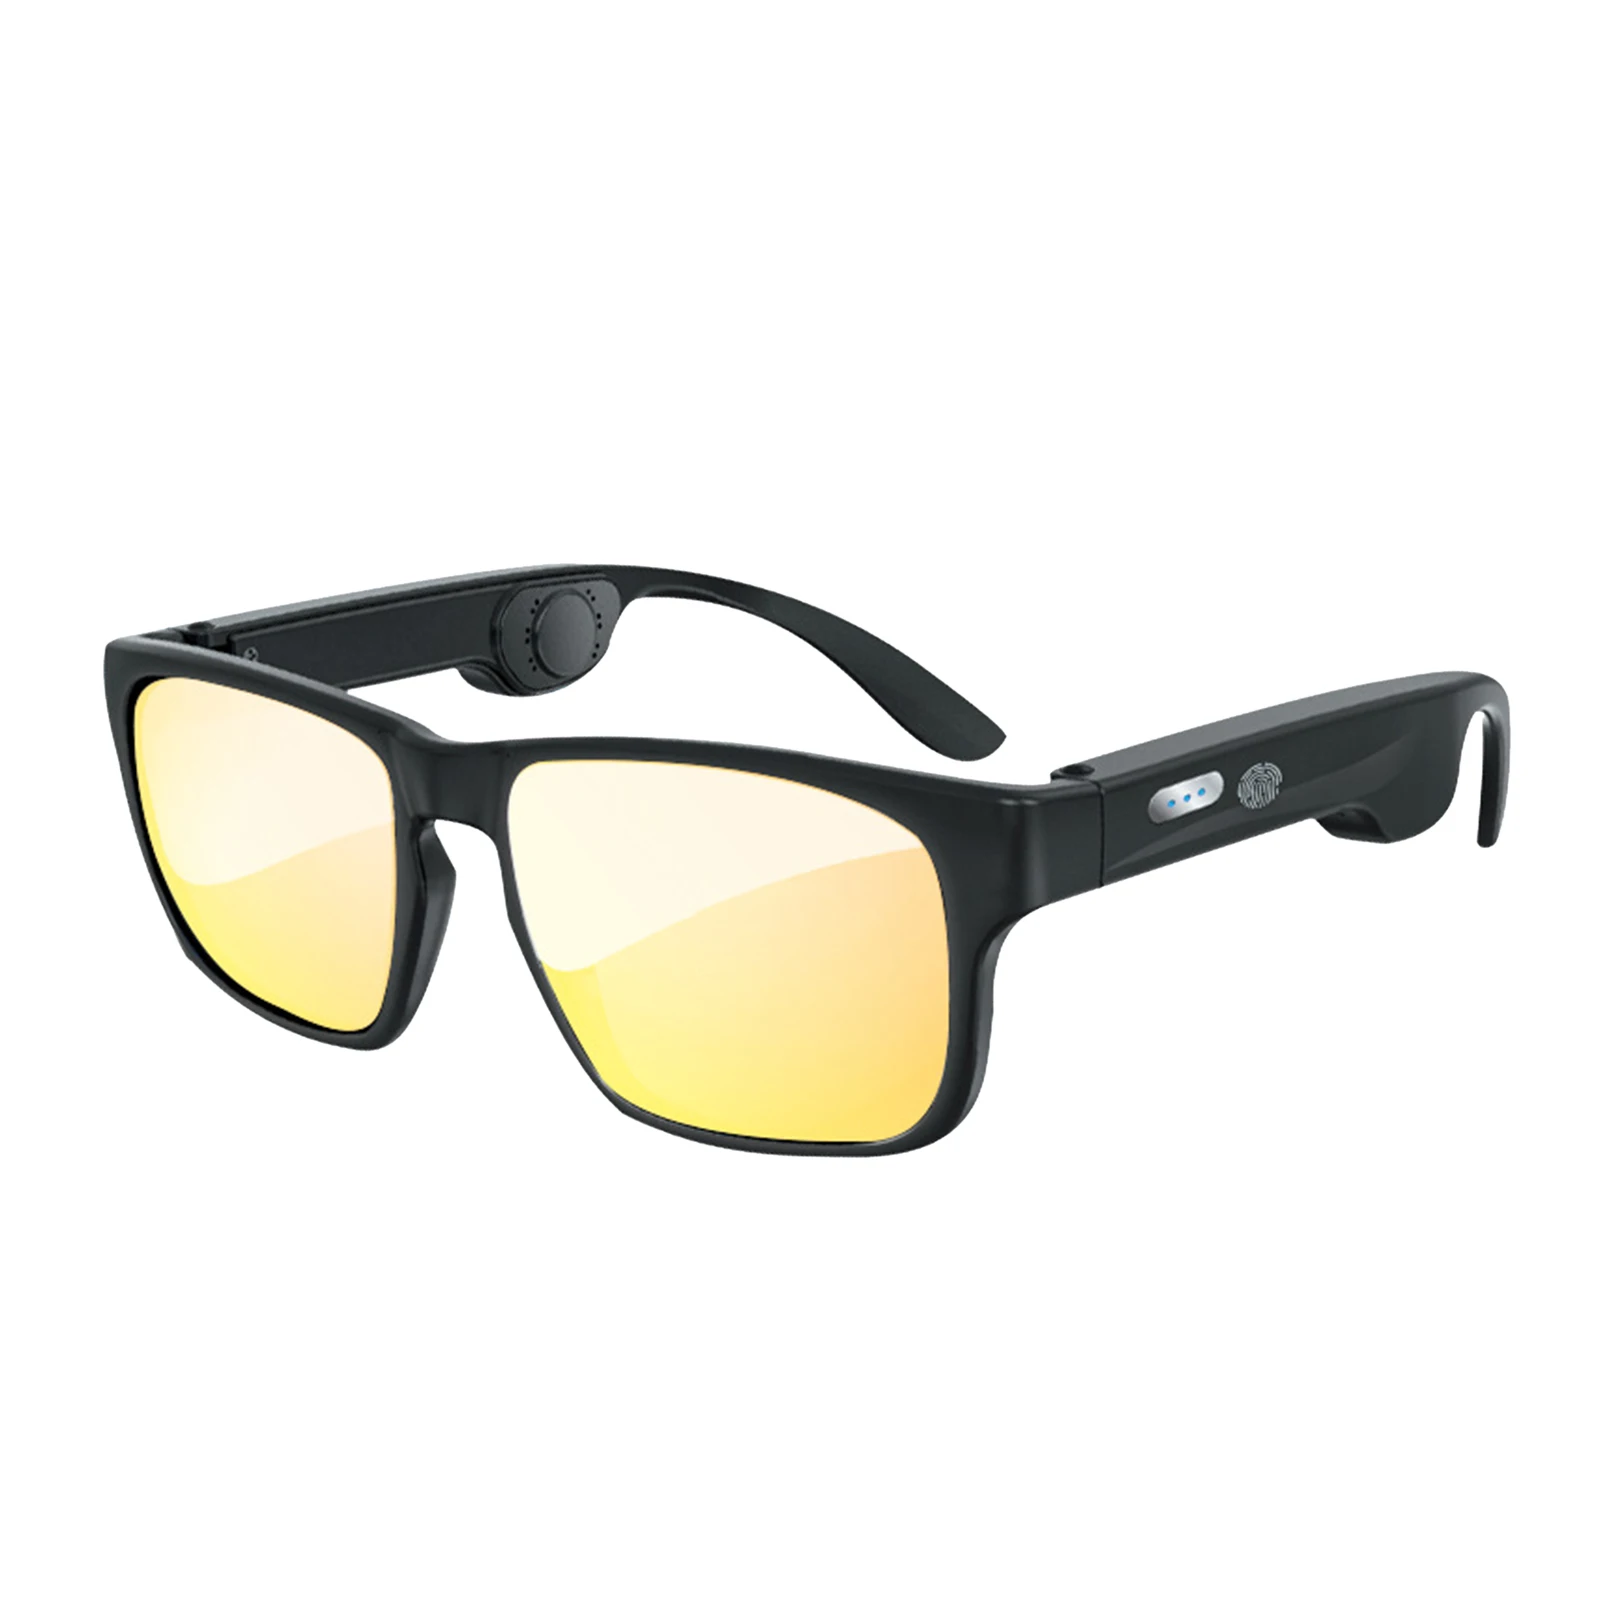 저렴한 골전도 안경 선글라스 블루투스 헤드폰, 방수 및 전체 UV 렌즈 보호